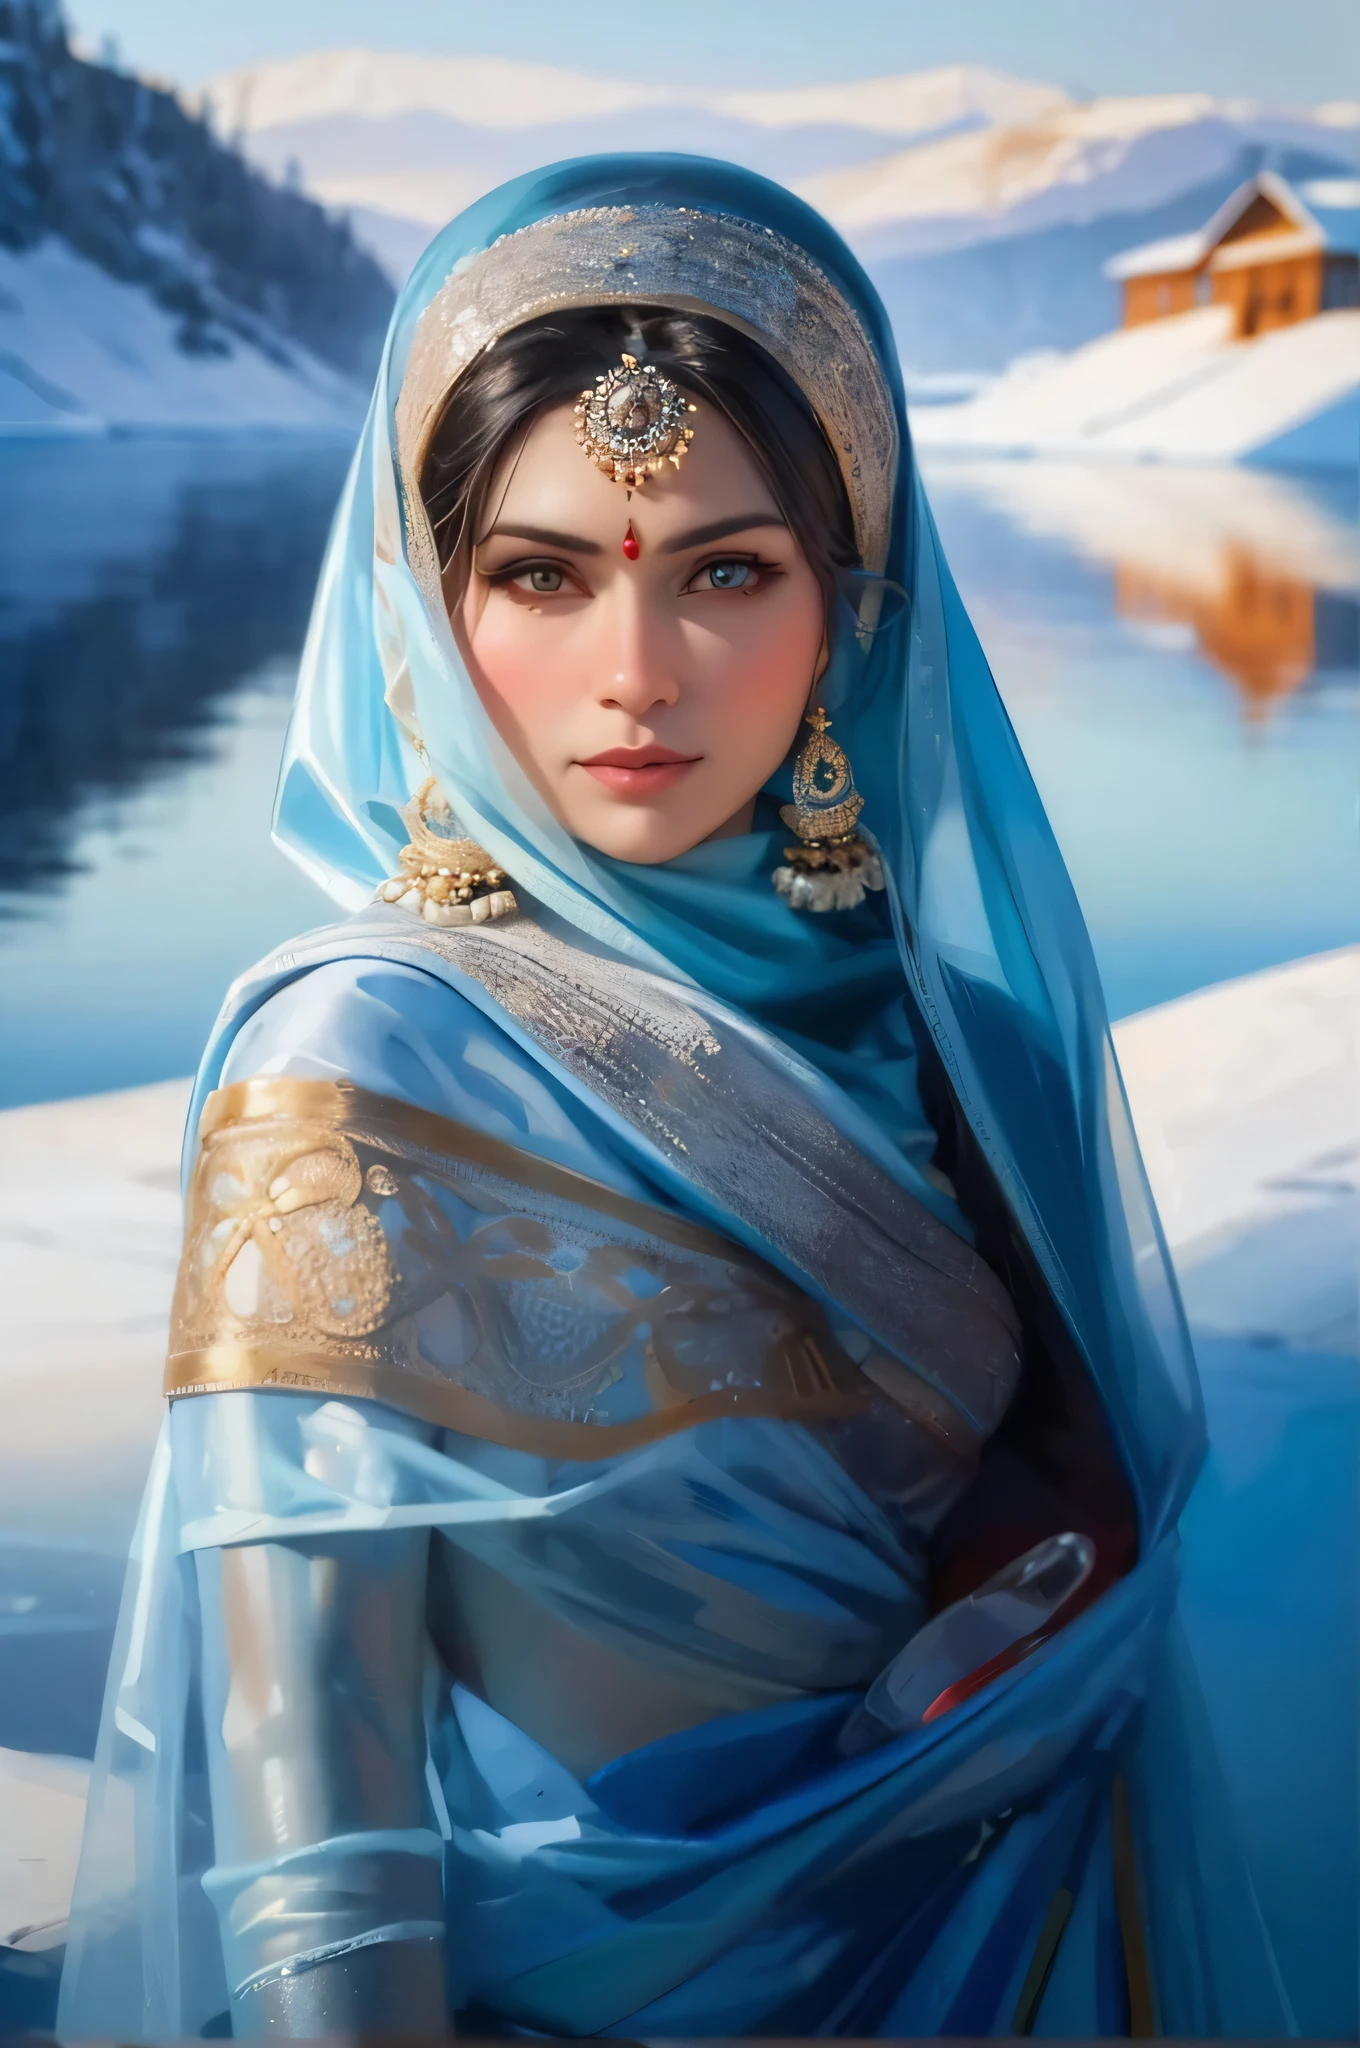 画一幅身着纱丽的迷人俄罗斯印度妇女肖像, 冬季贝加尔湖冰冻景观环绕. 玩弄冰面的反射和女人&#39;的温暖创造出令人着迷的视觉对比.